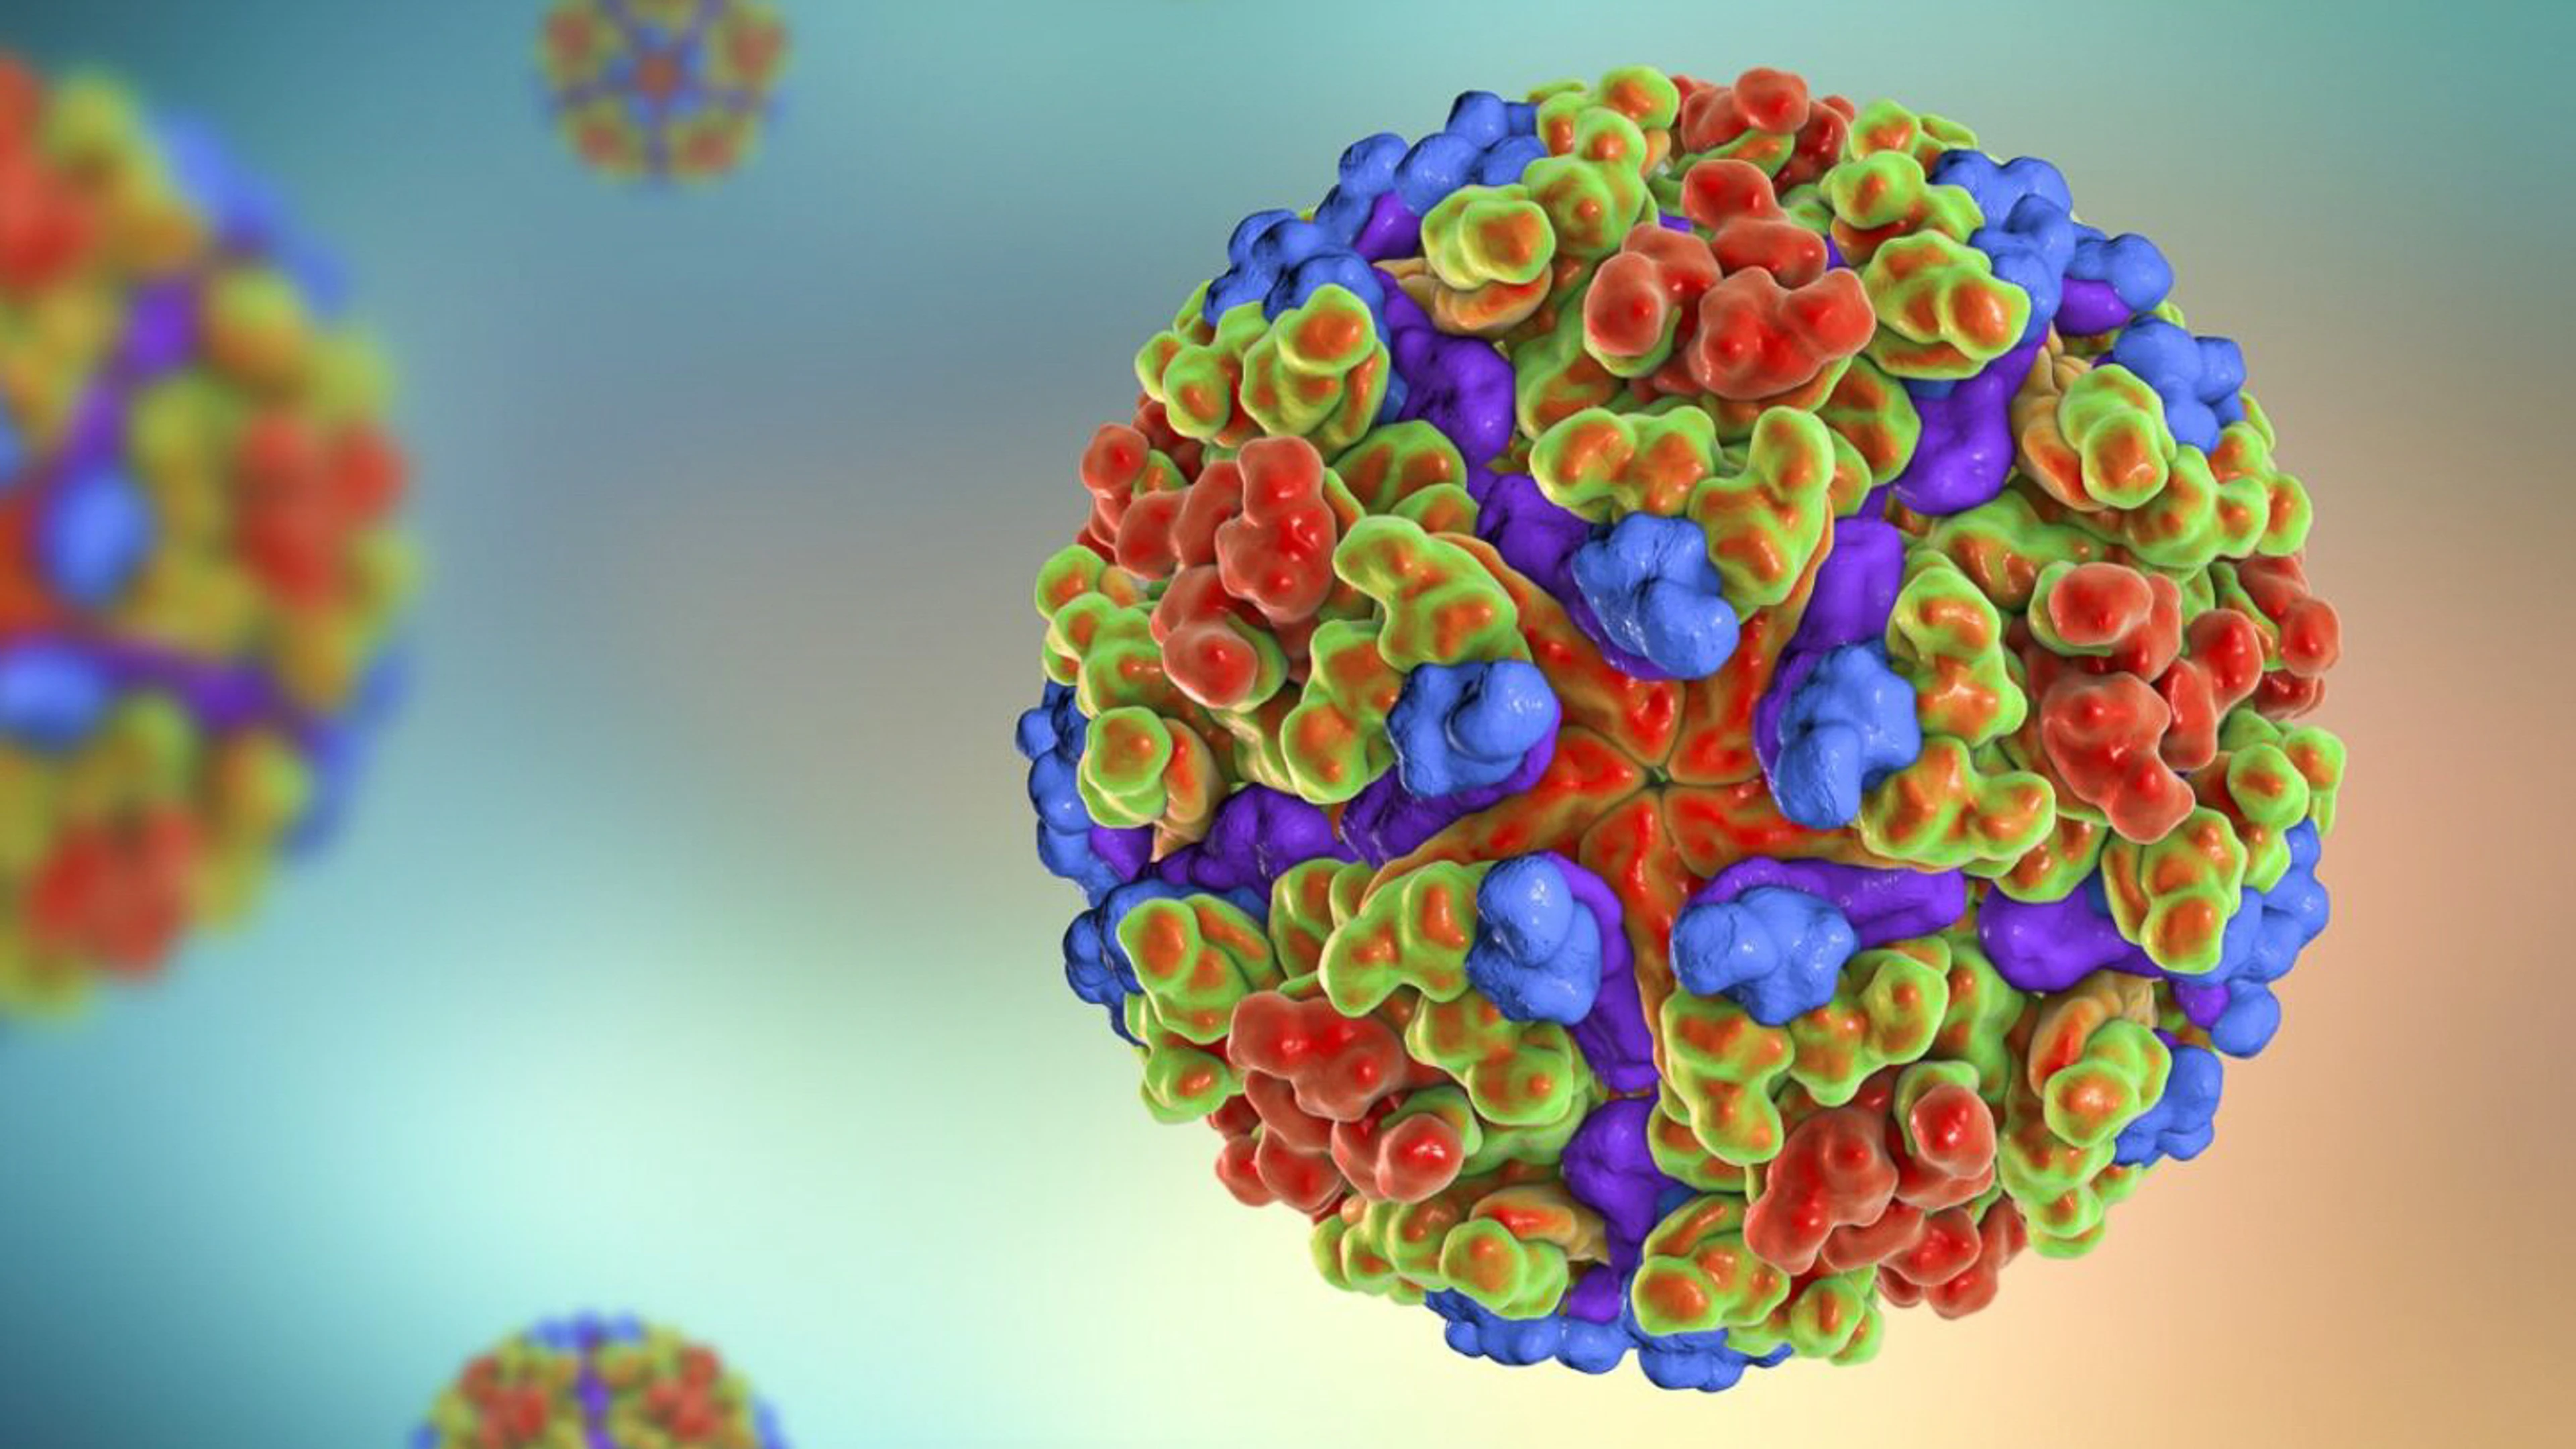 A close up image of the Chikungunya Virus